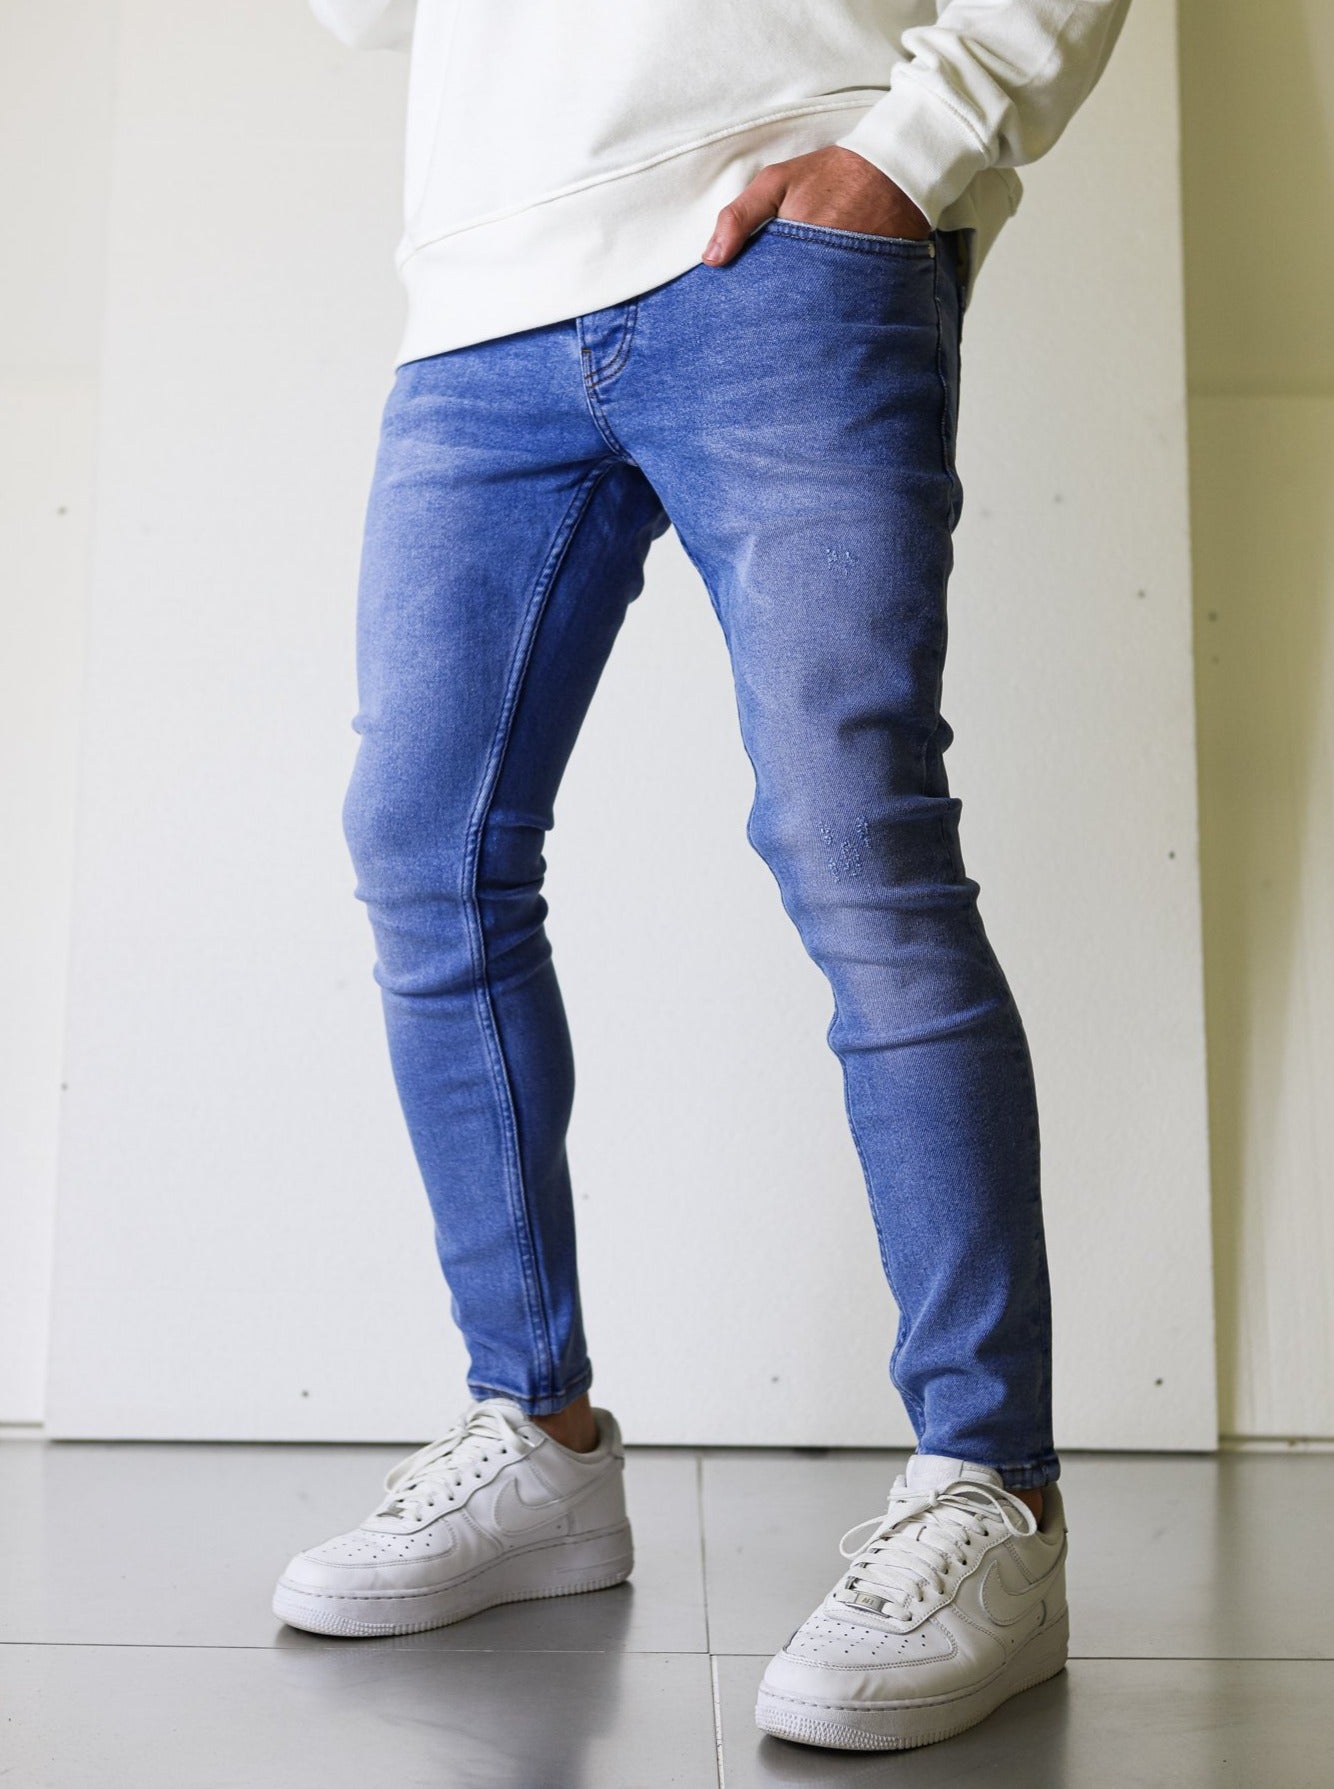 Basic Light Blue Jeans - UNEFFECTED STUDIOS® - JEANS - UNEFFECTED